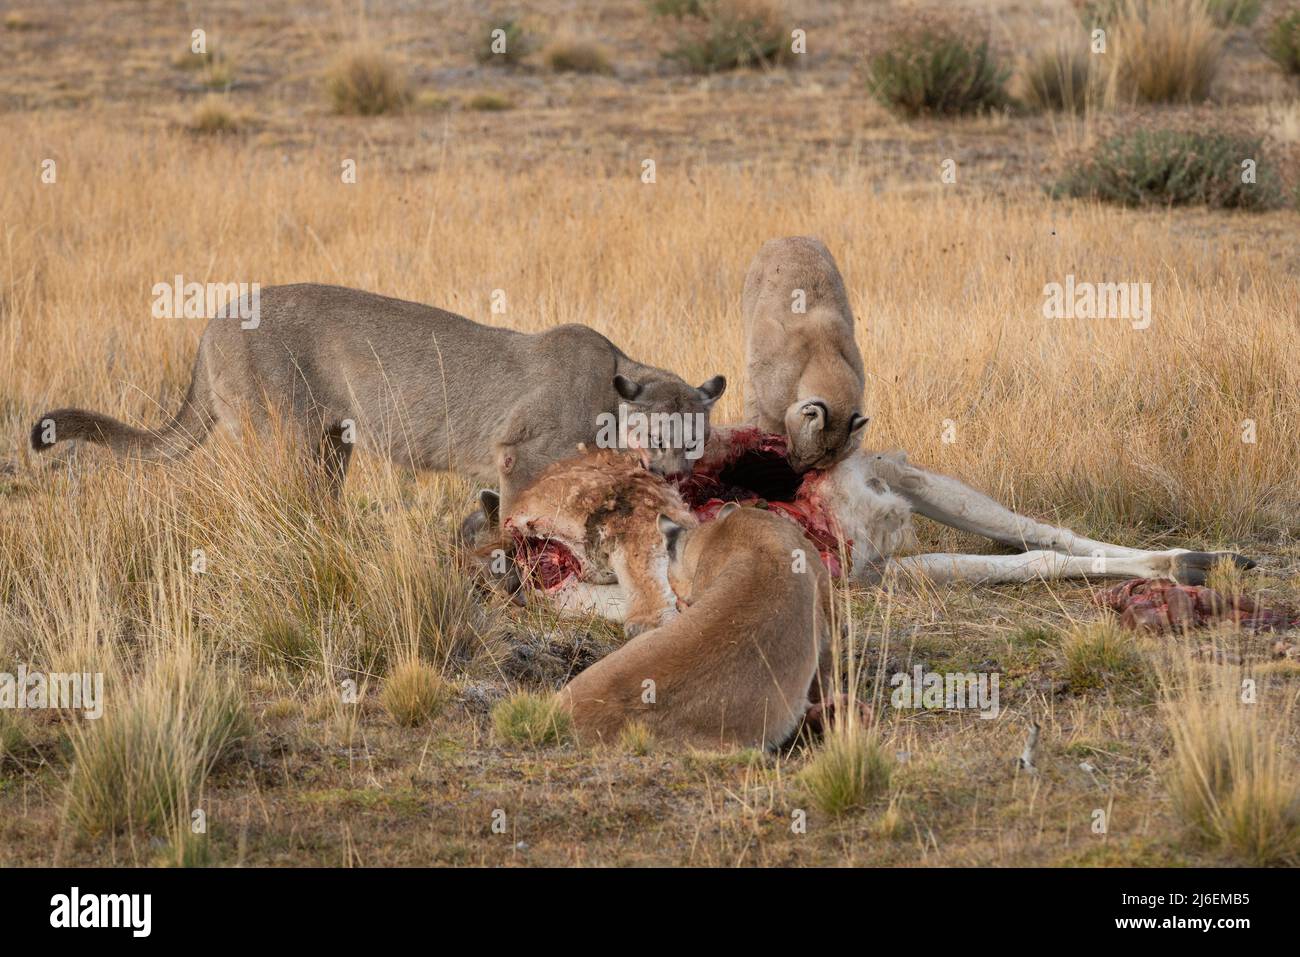 Pumas femelle adulte partageant une carcasse de Guanaco au sud du Chili Banque D'Images